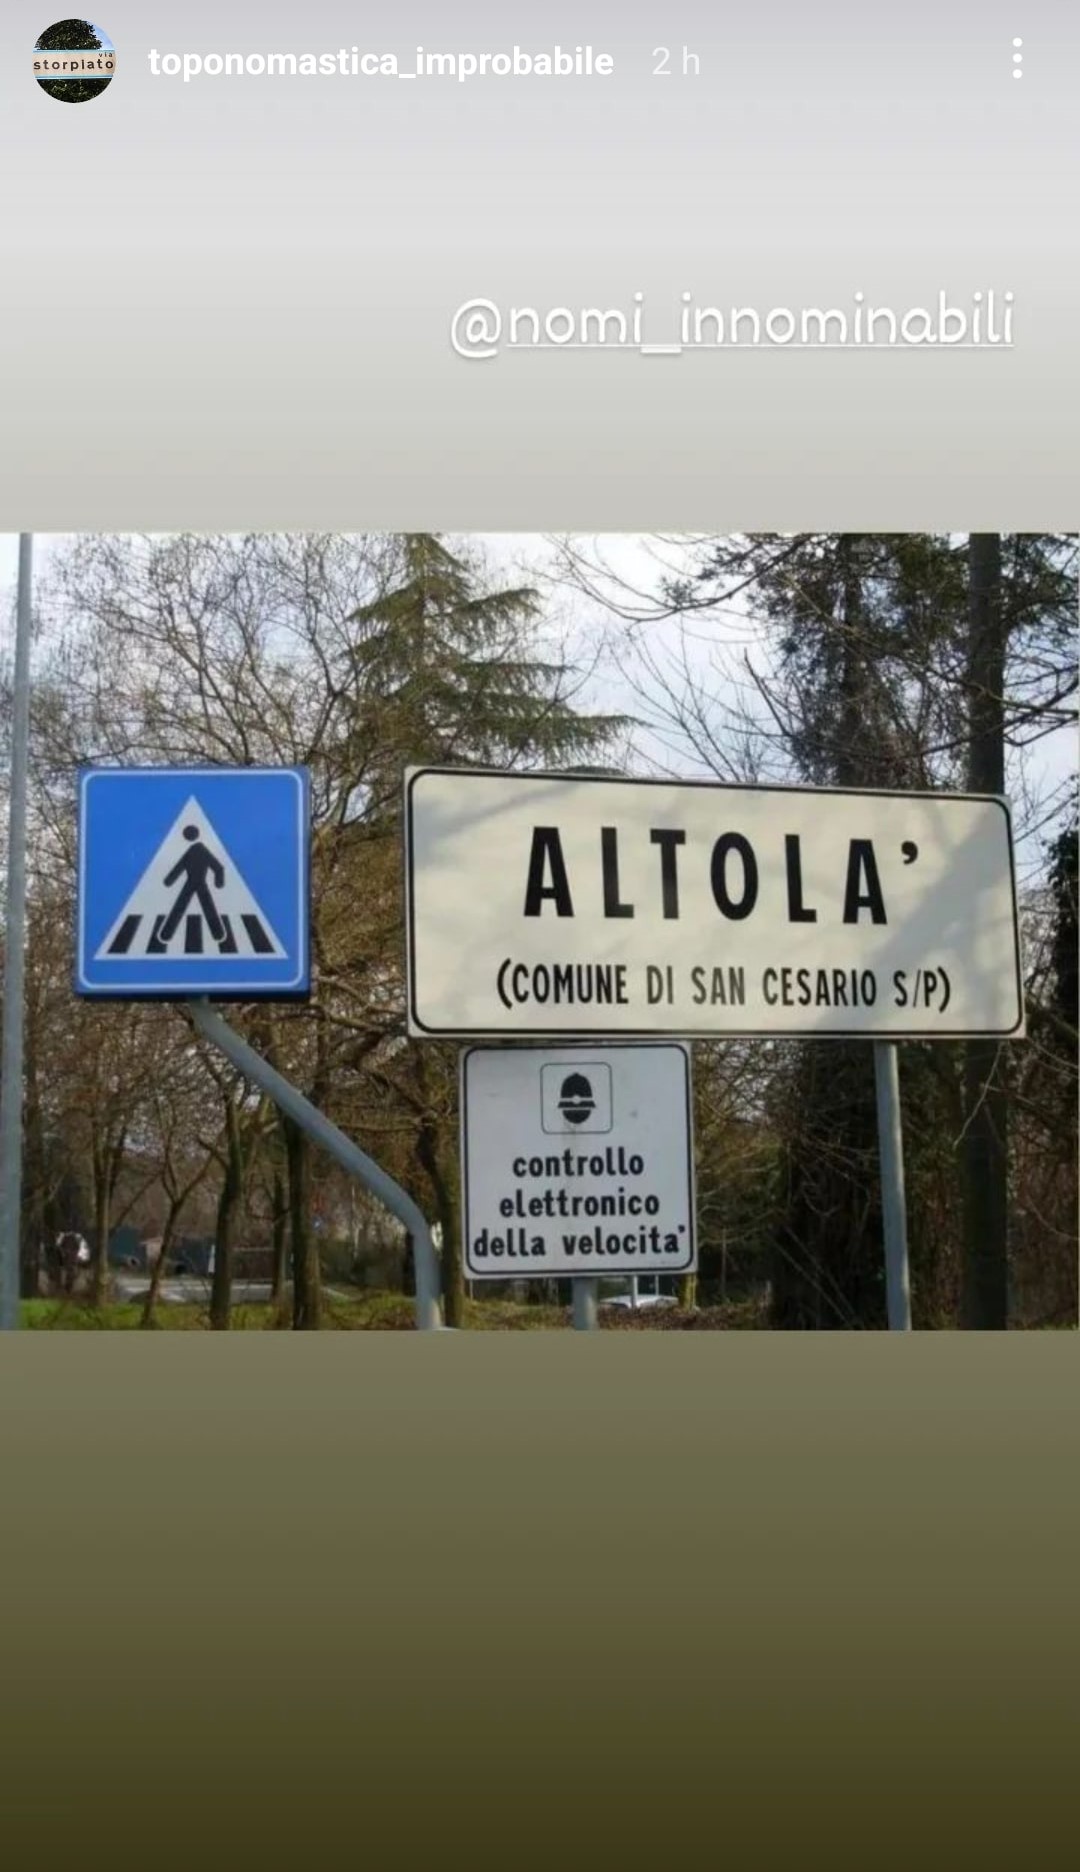 Il comune dell'Emilia Romagna in cui c'è una frazione chiamata Altolà. Fonte: toponomastica_improbabile - Instagram